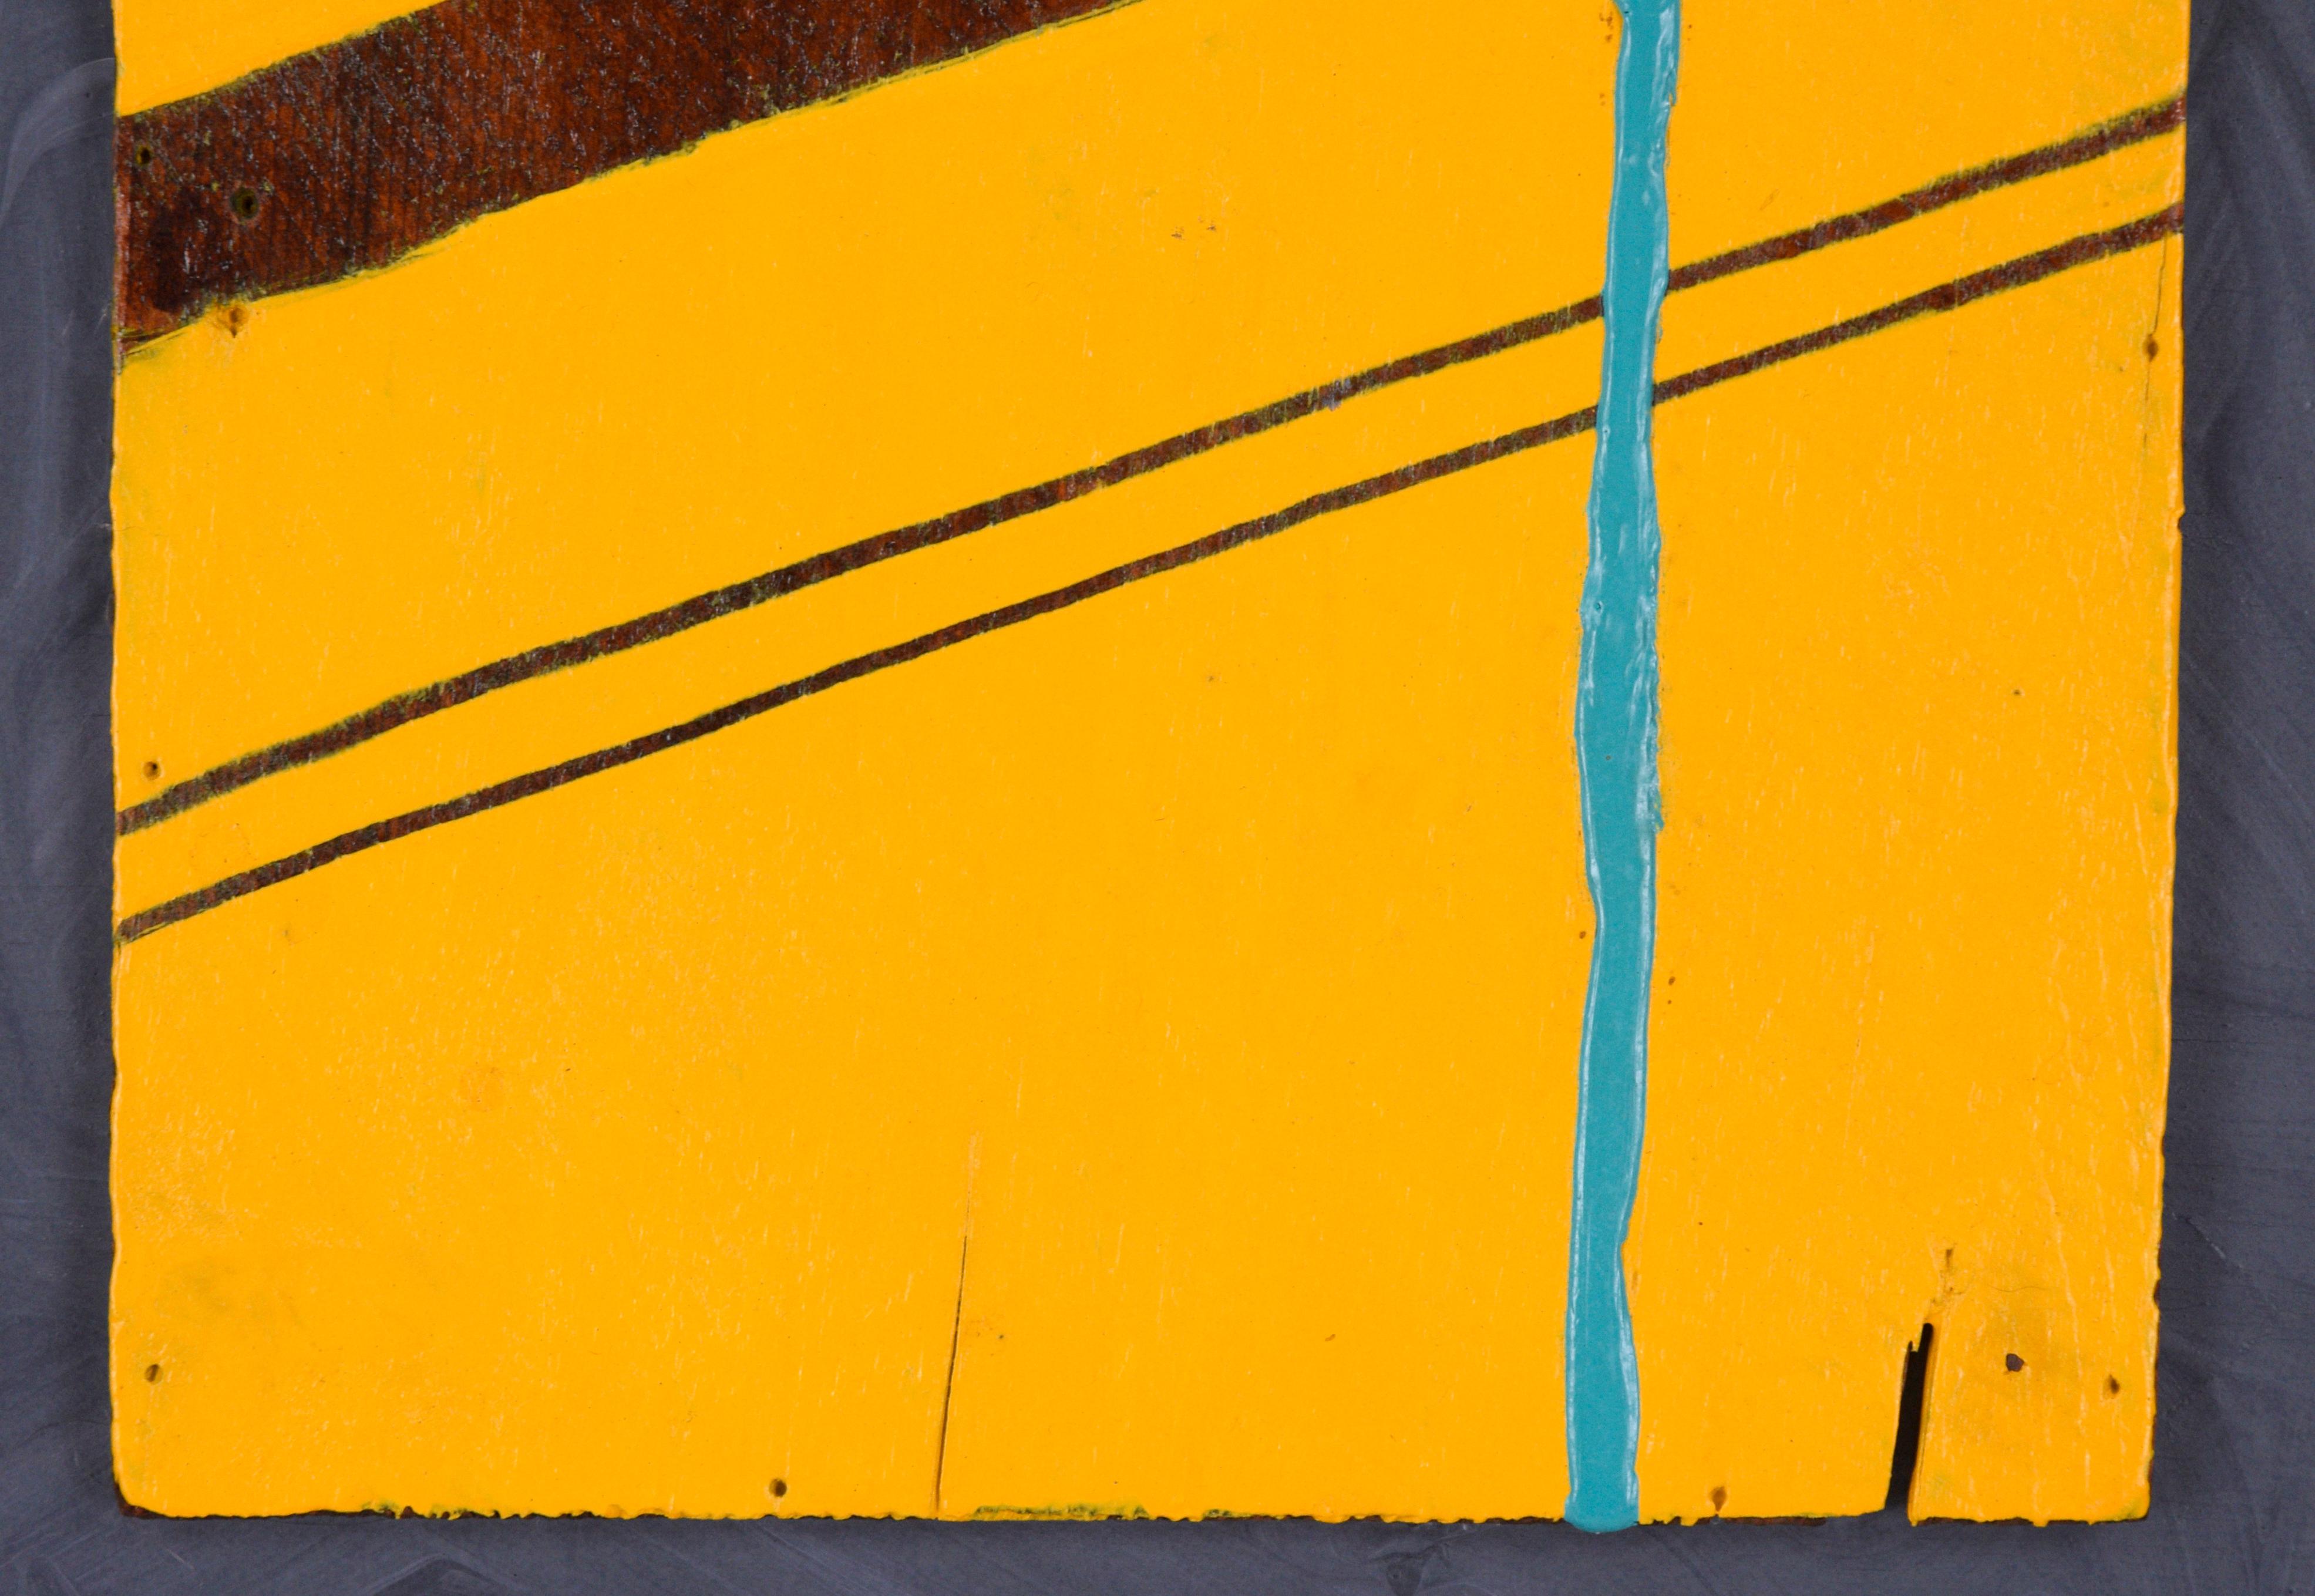 Composition abstraite minimaliste de l'artiste californien Devon Brockopp-Hammer (américain, né en 1986). Une couche de peinture jaune épaisse a été appliquée sur un panneau de bois récupéré, puis les lignes ont été grattées pour révéler le bois en